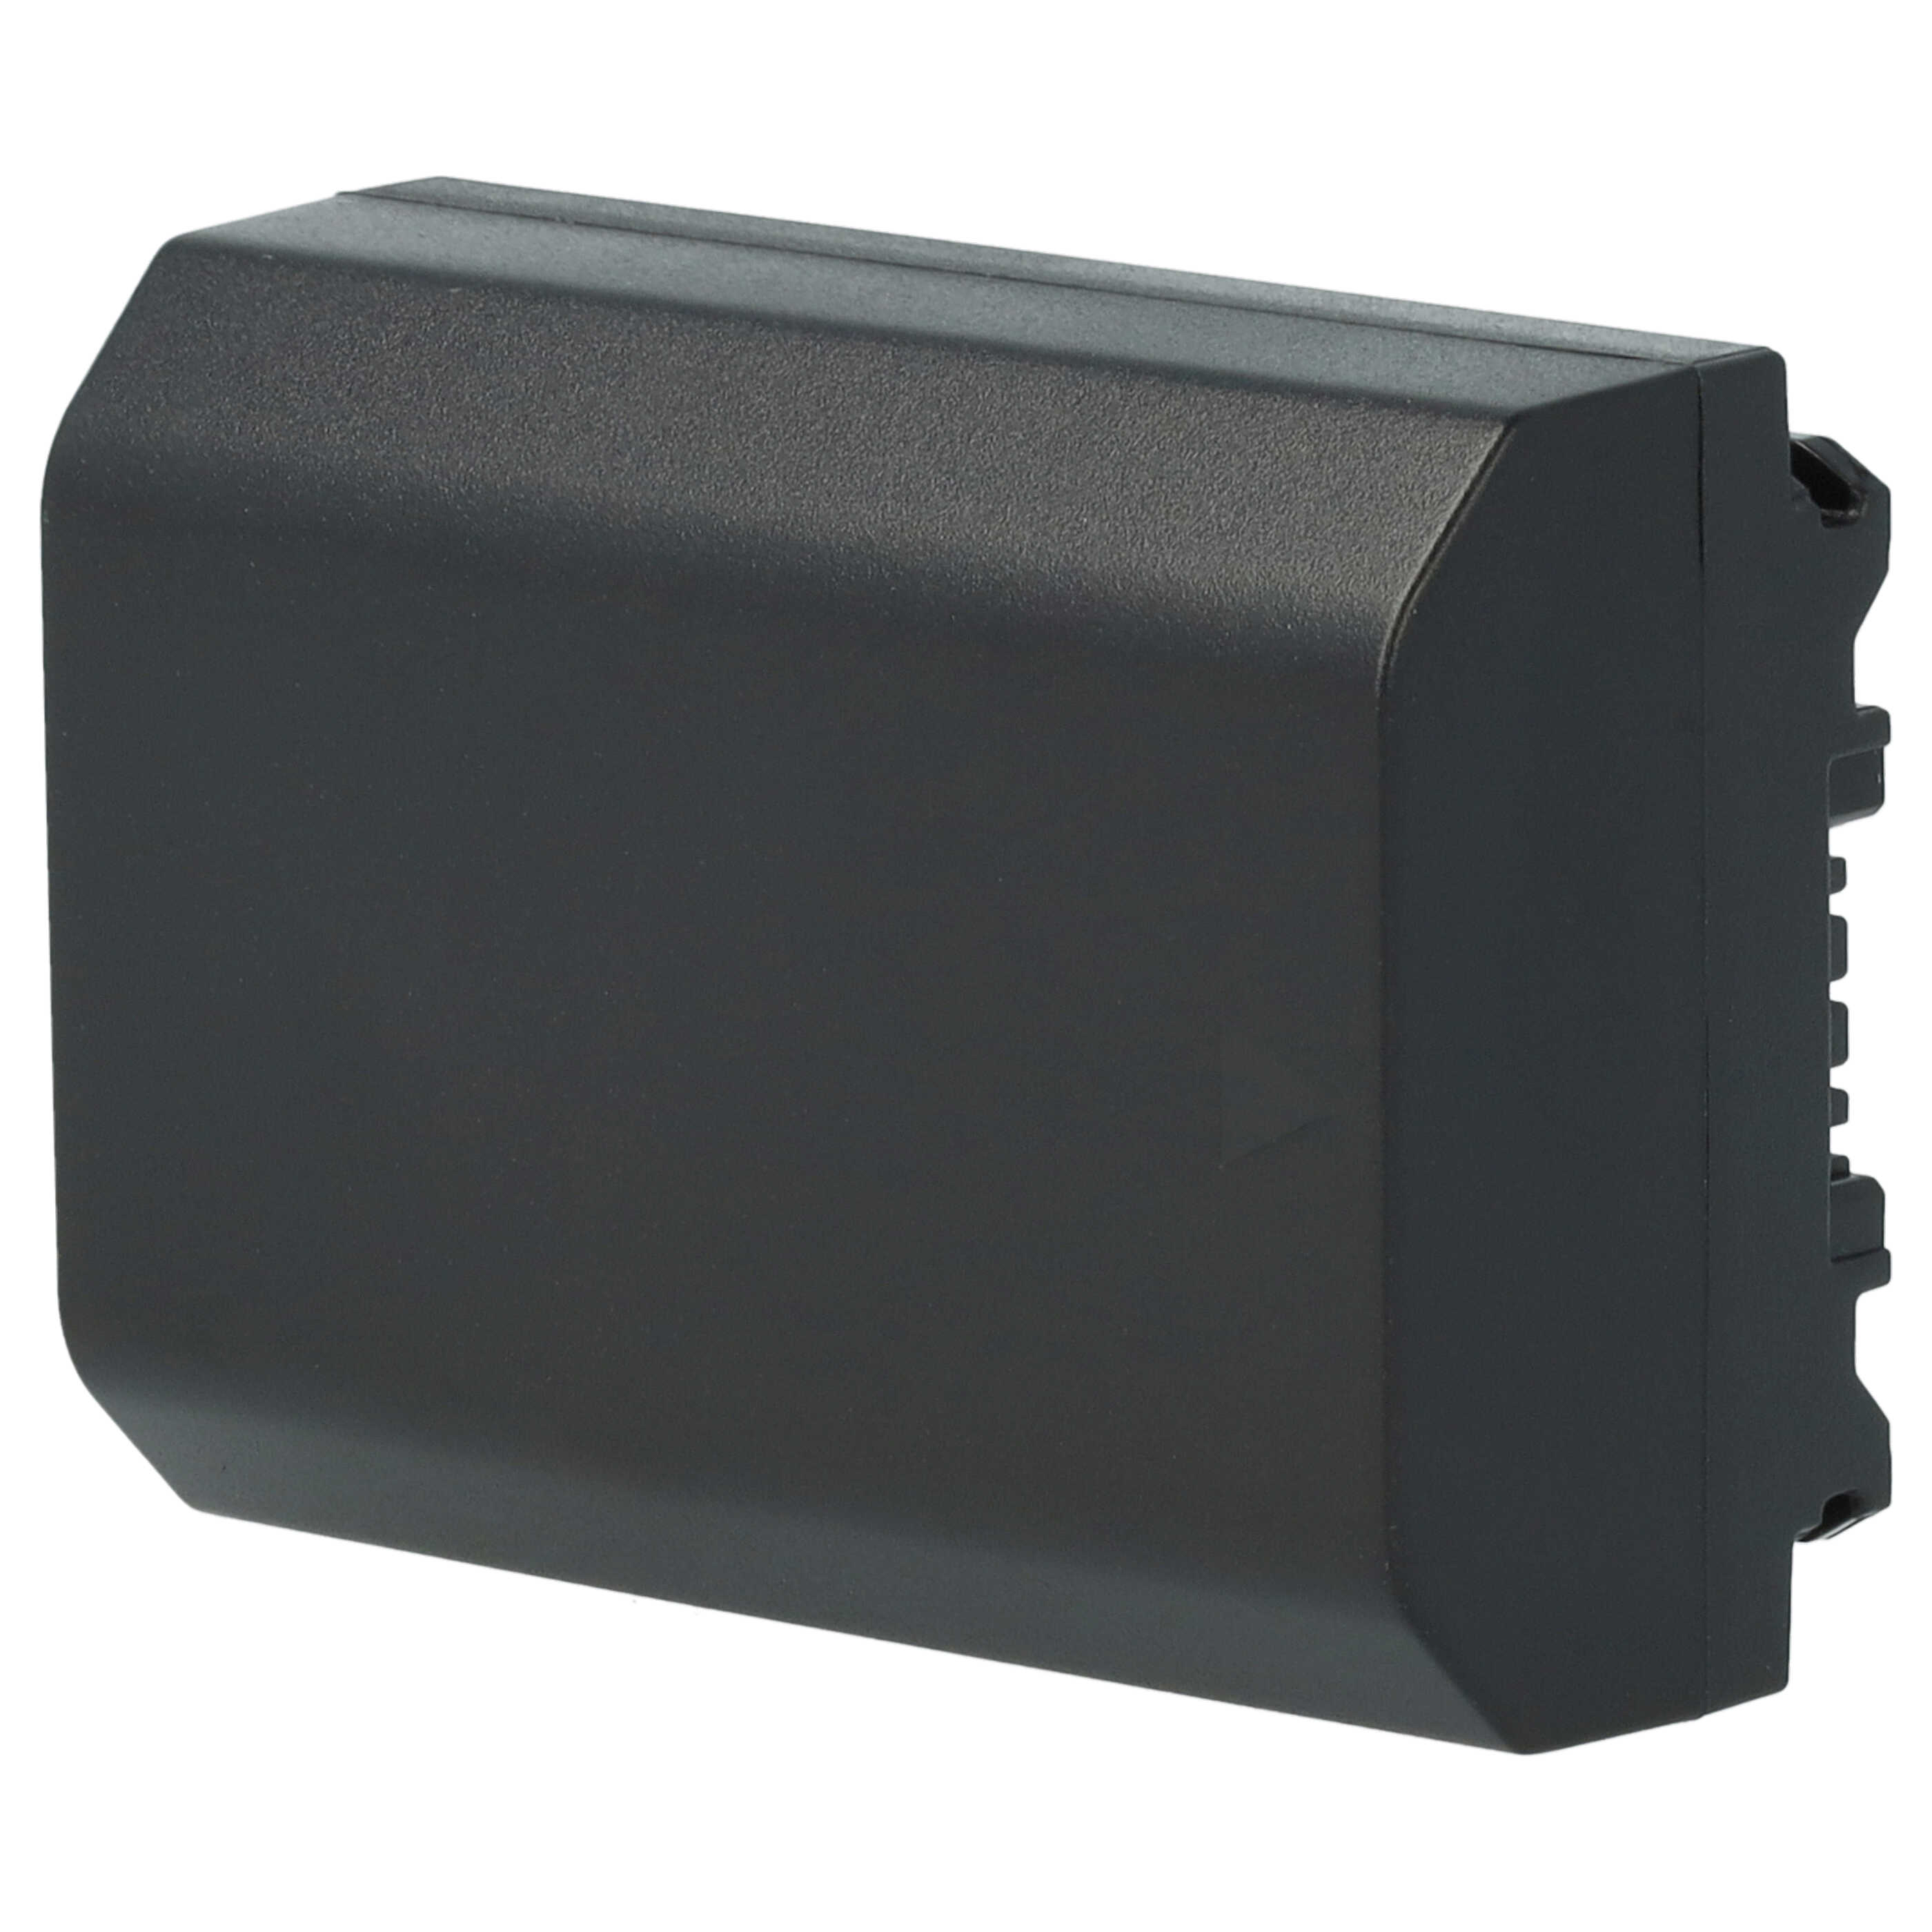 2x Akumulator do aparatu cyfrowego zamiennik Sony NP-FZ100 - 2400 mAh 7,2 V Li-Ion